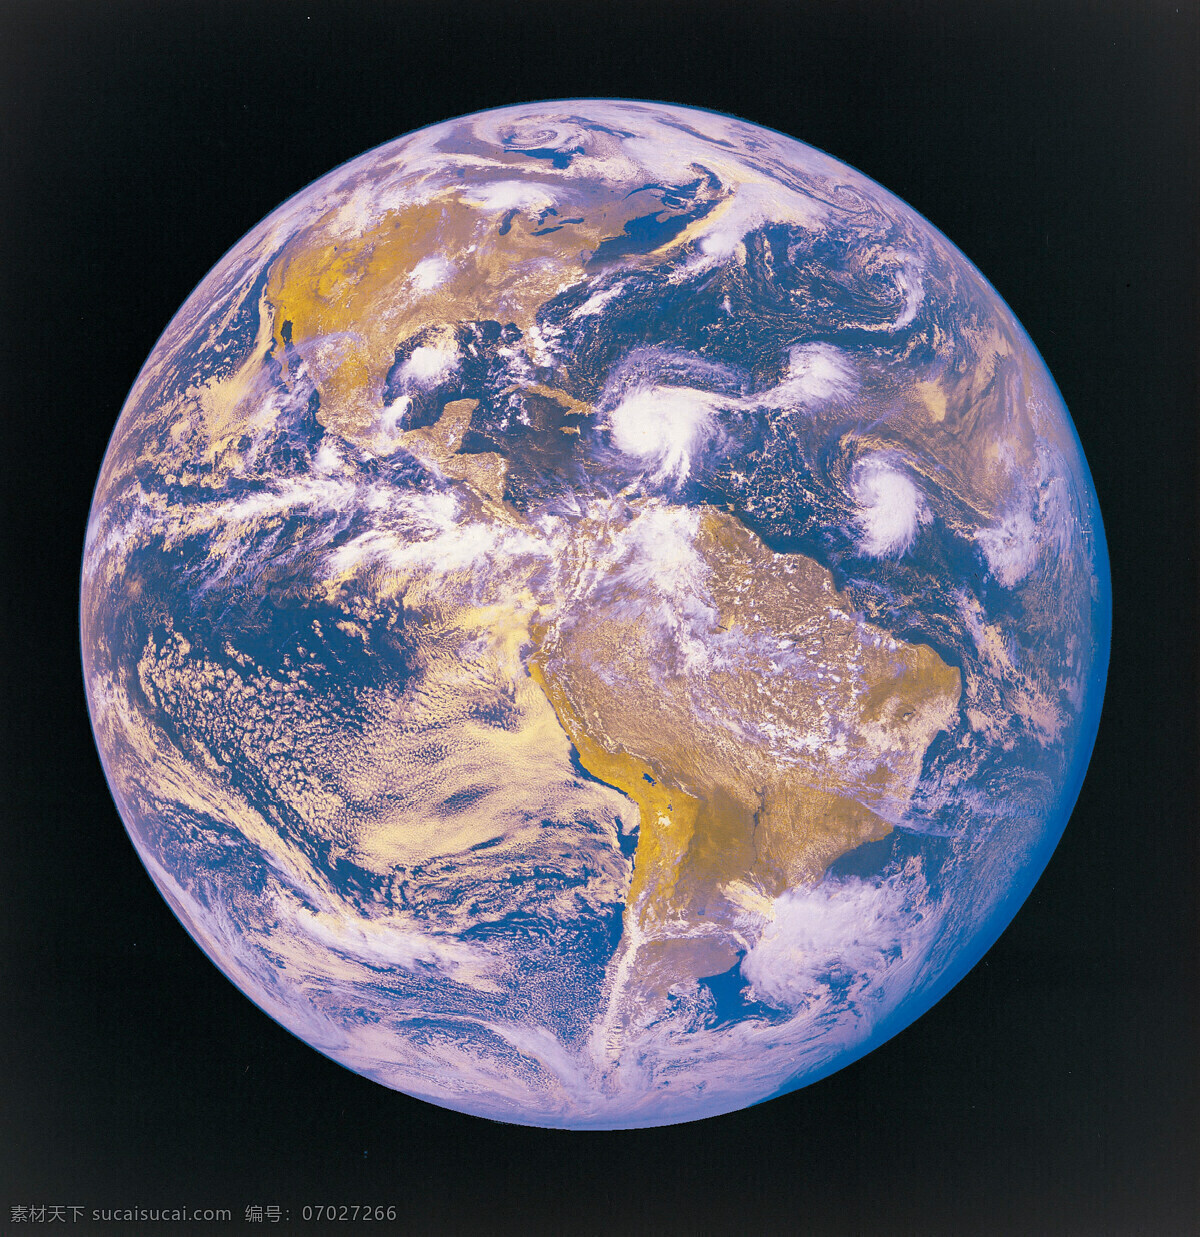 科技 科学 科学研究 设计图 设计图库 天文 现代科技 星球 行星 晰 俯视 地球 天体 宇宙 星球世界 矢量图